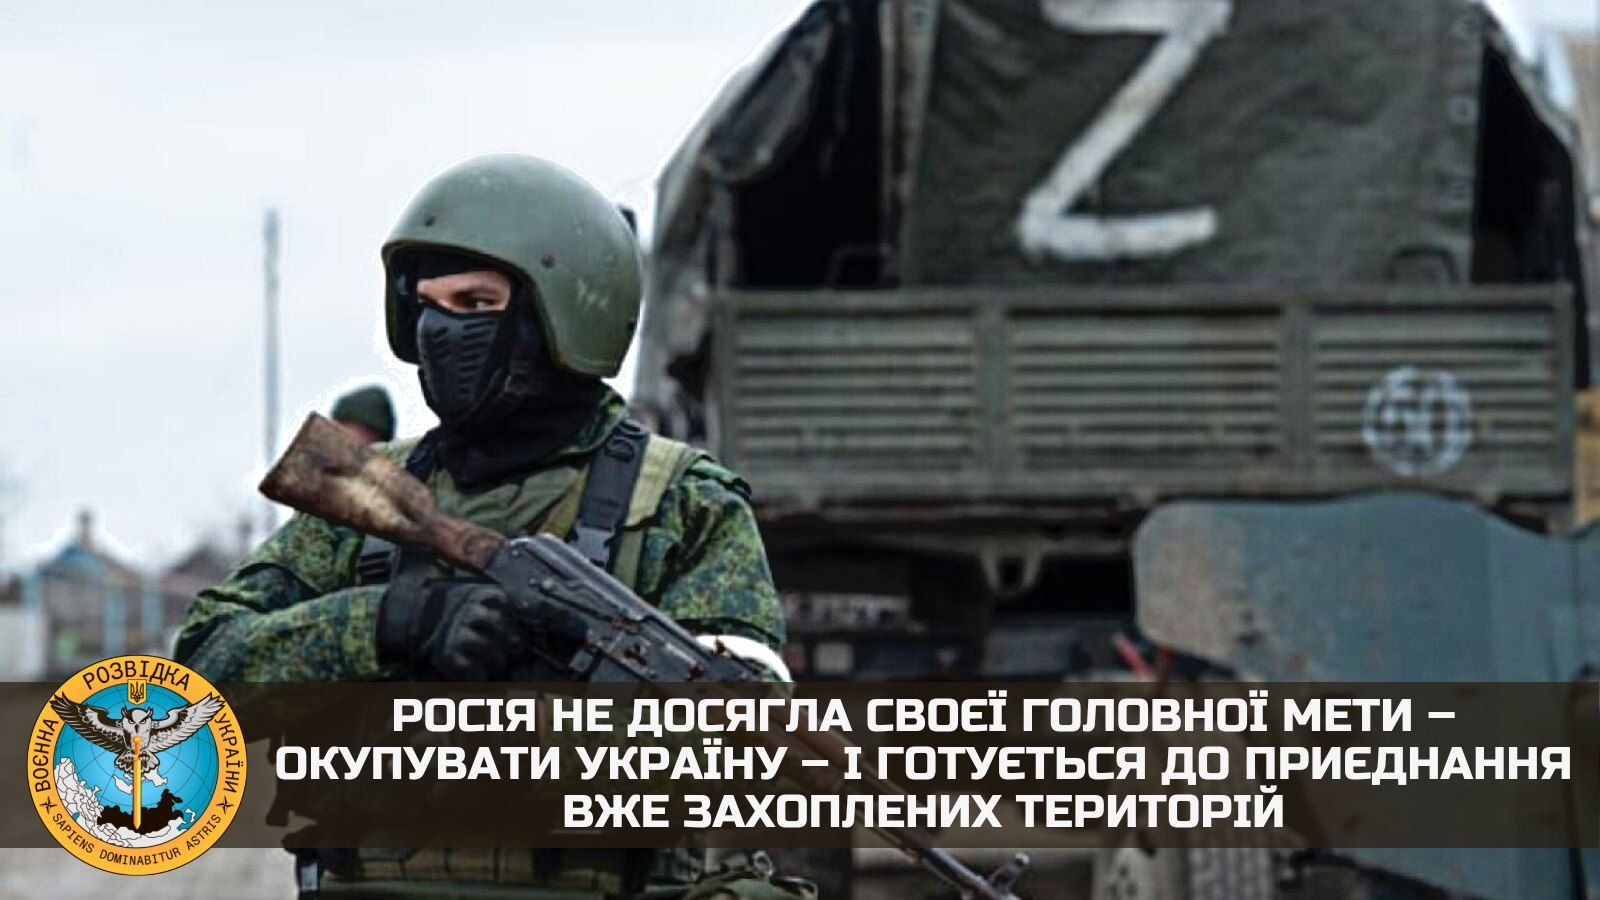 "Путин не достиг цели", – в ГУР заявили, что РФ готовится присоединить оккупированные территории